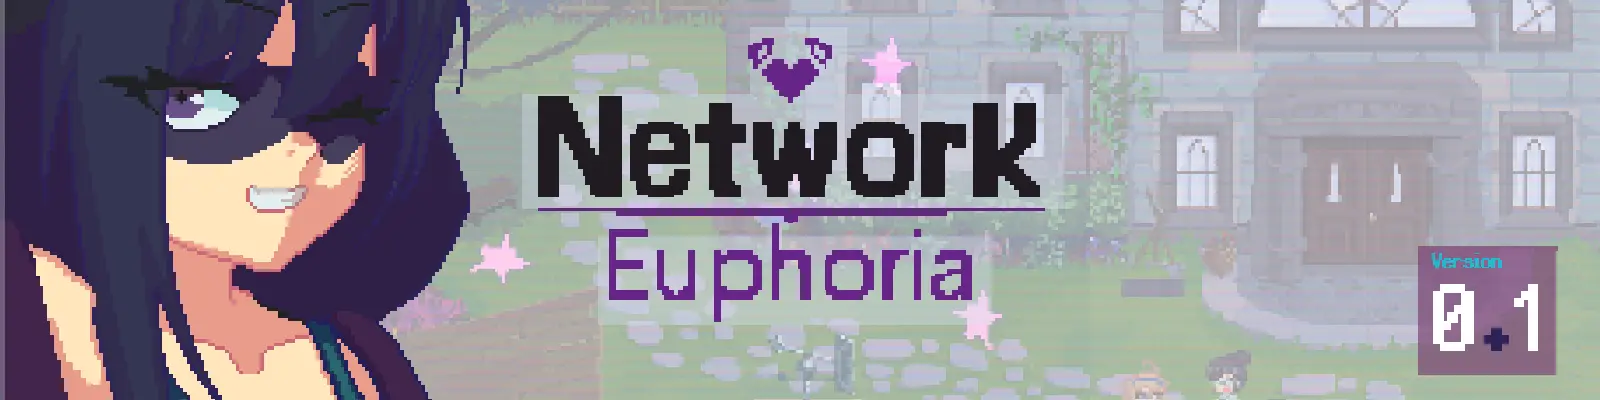 Network Euphoria main image